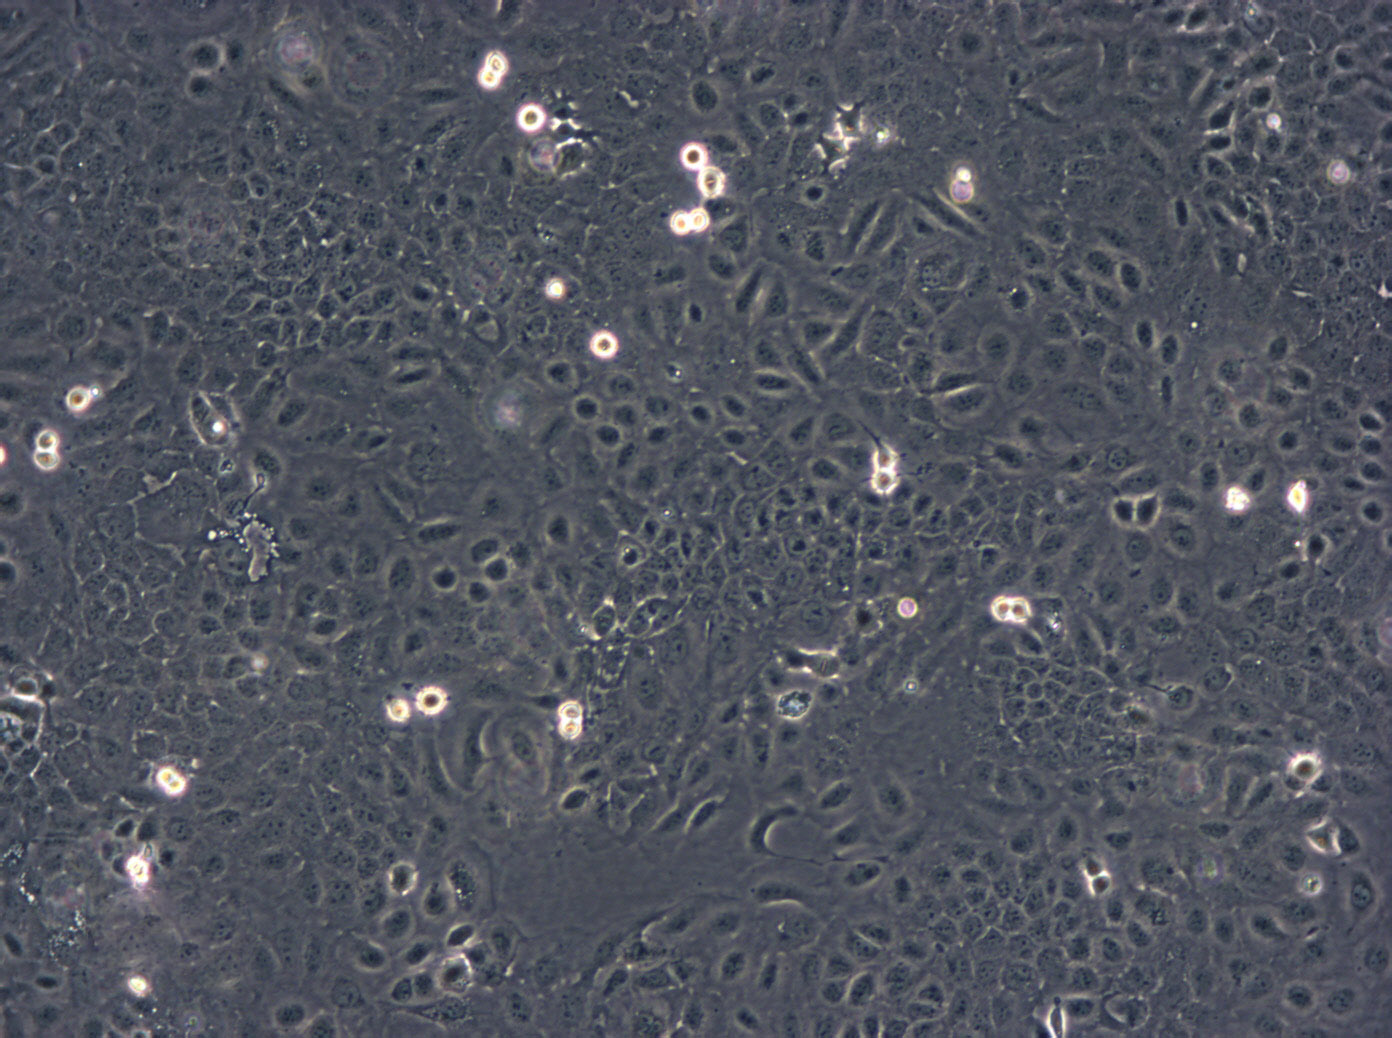 Capan-2:人胰腺癌复苏细胞(提供STR鉴定图谱),Capan-2